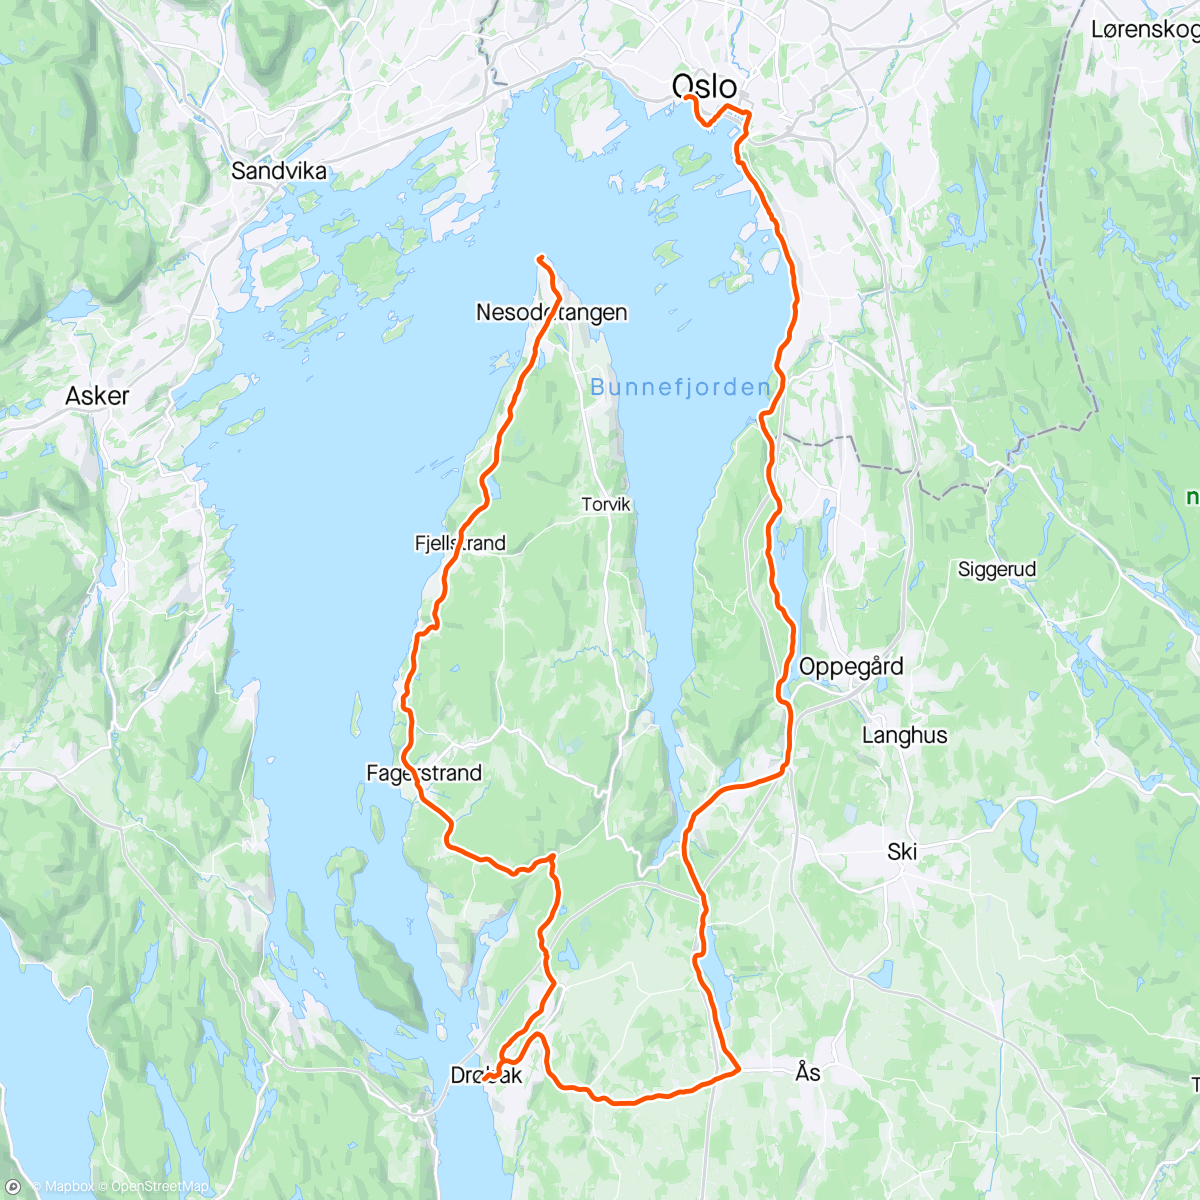 アクティビティ「From lalalalalong long to short short in 4 days. Youve gotta love Norway….」の地図